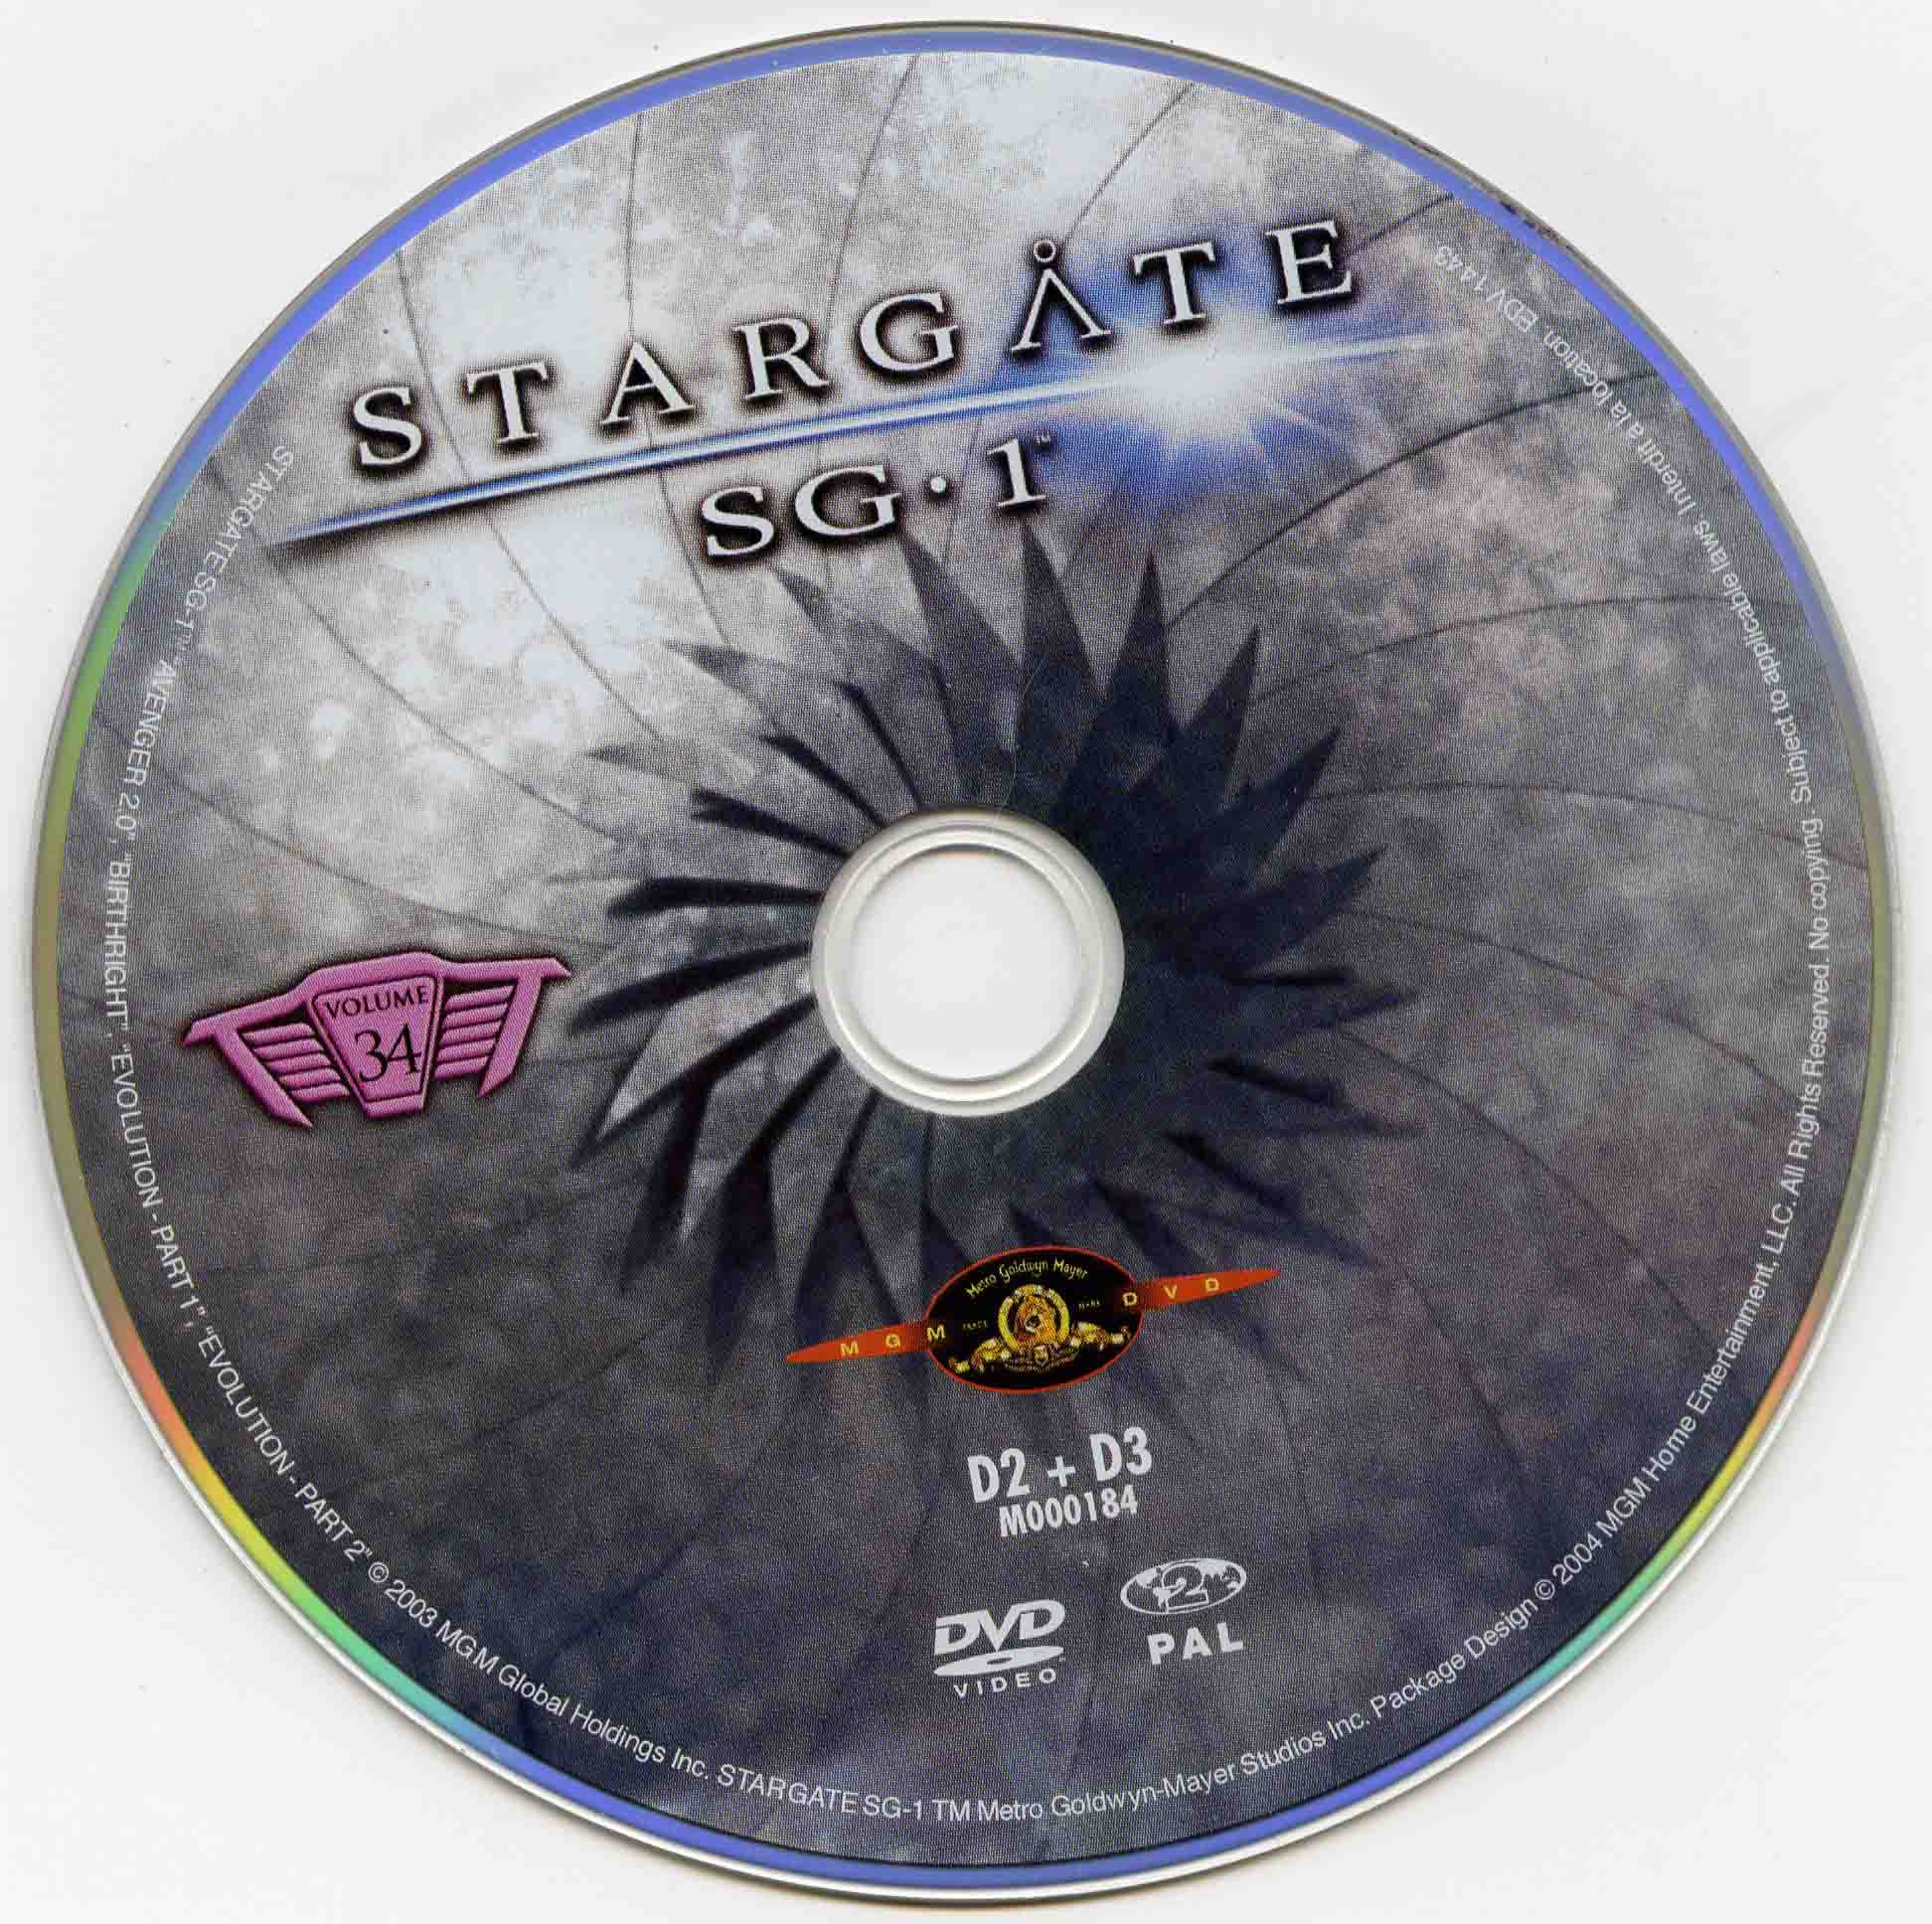 Stargate SG1 vol 34